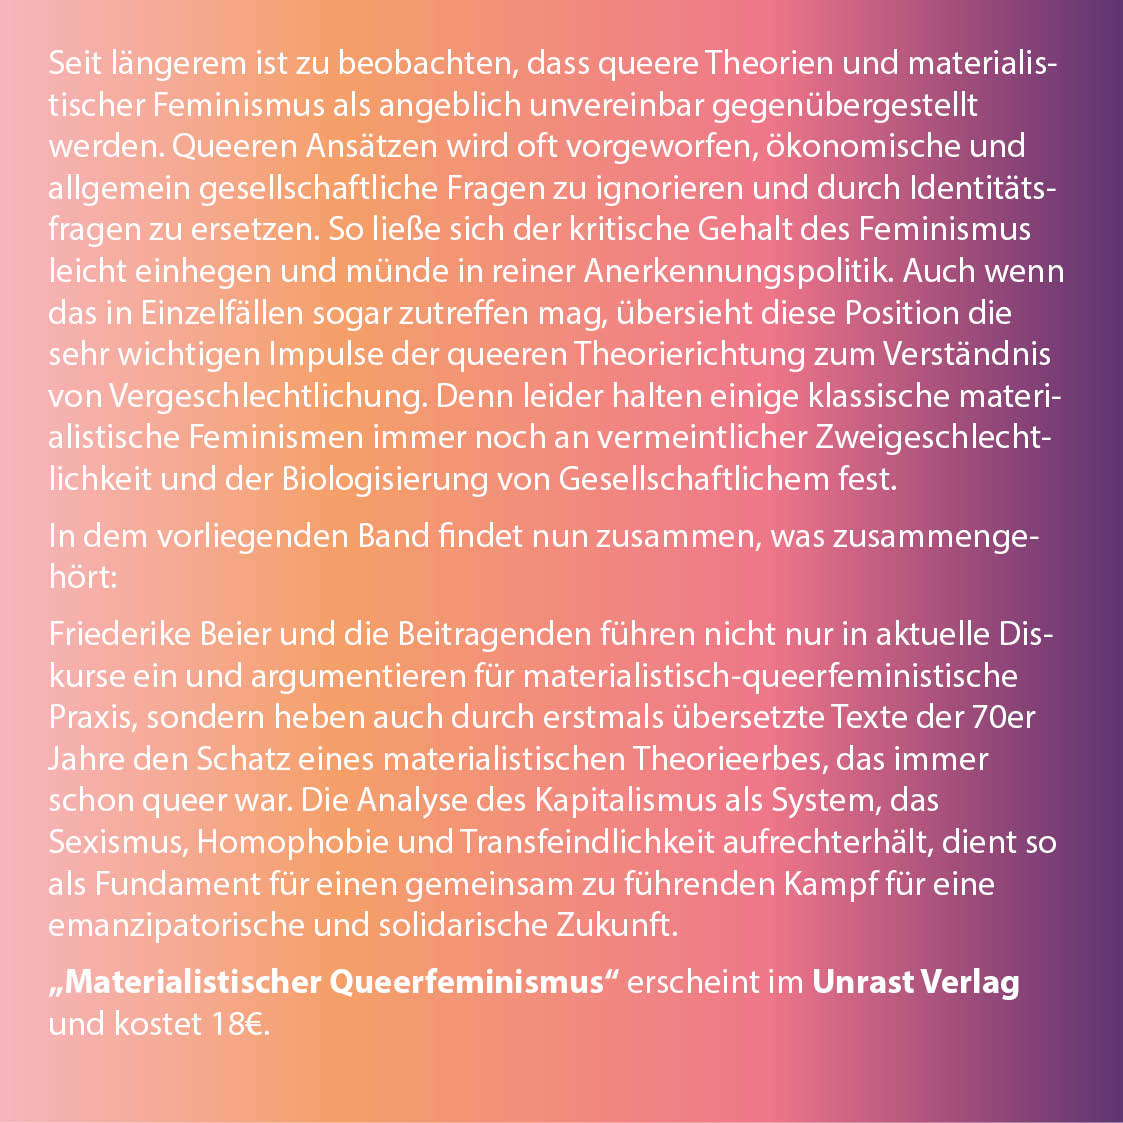 Dieser Tage erscheint ein wichtiges Buch bei @UnrastV: 'Materialistischer Queerfeminismus'. Wir freuen uns sehr, dass Herausgeberin Friederike Beier das Buch am Donnerstag, den 16. November bei uns vorstellen wird! Für eine antikapitalistische queer-feministische Praxis!